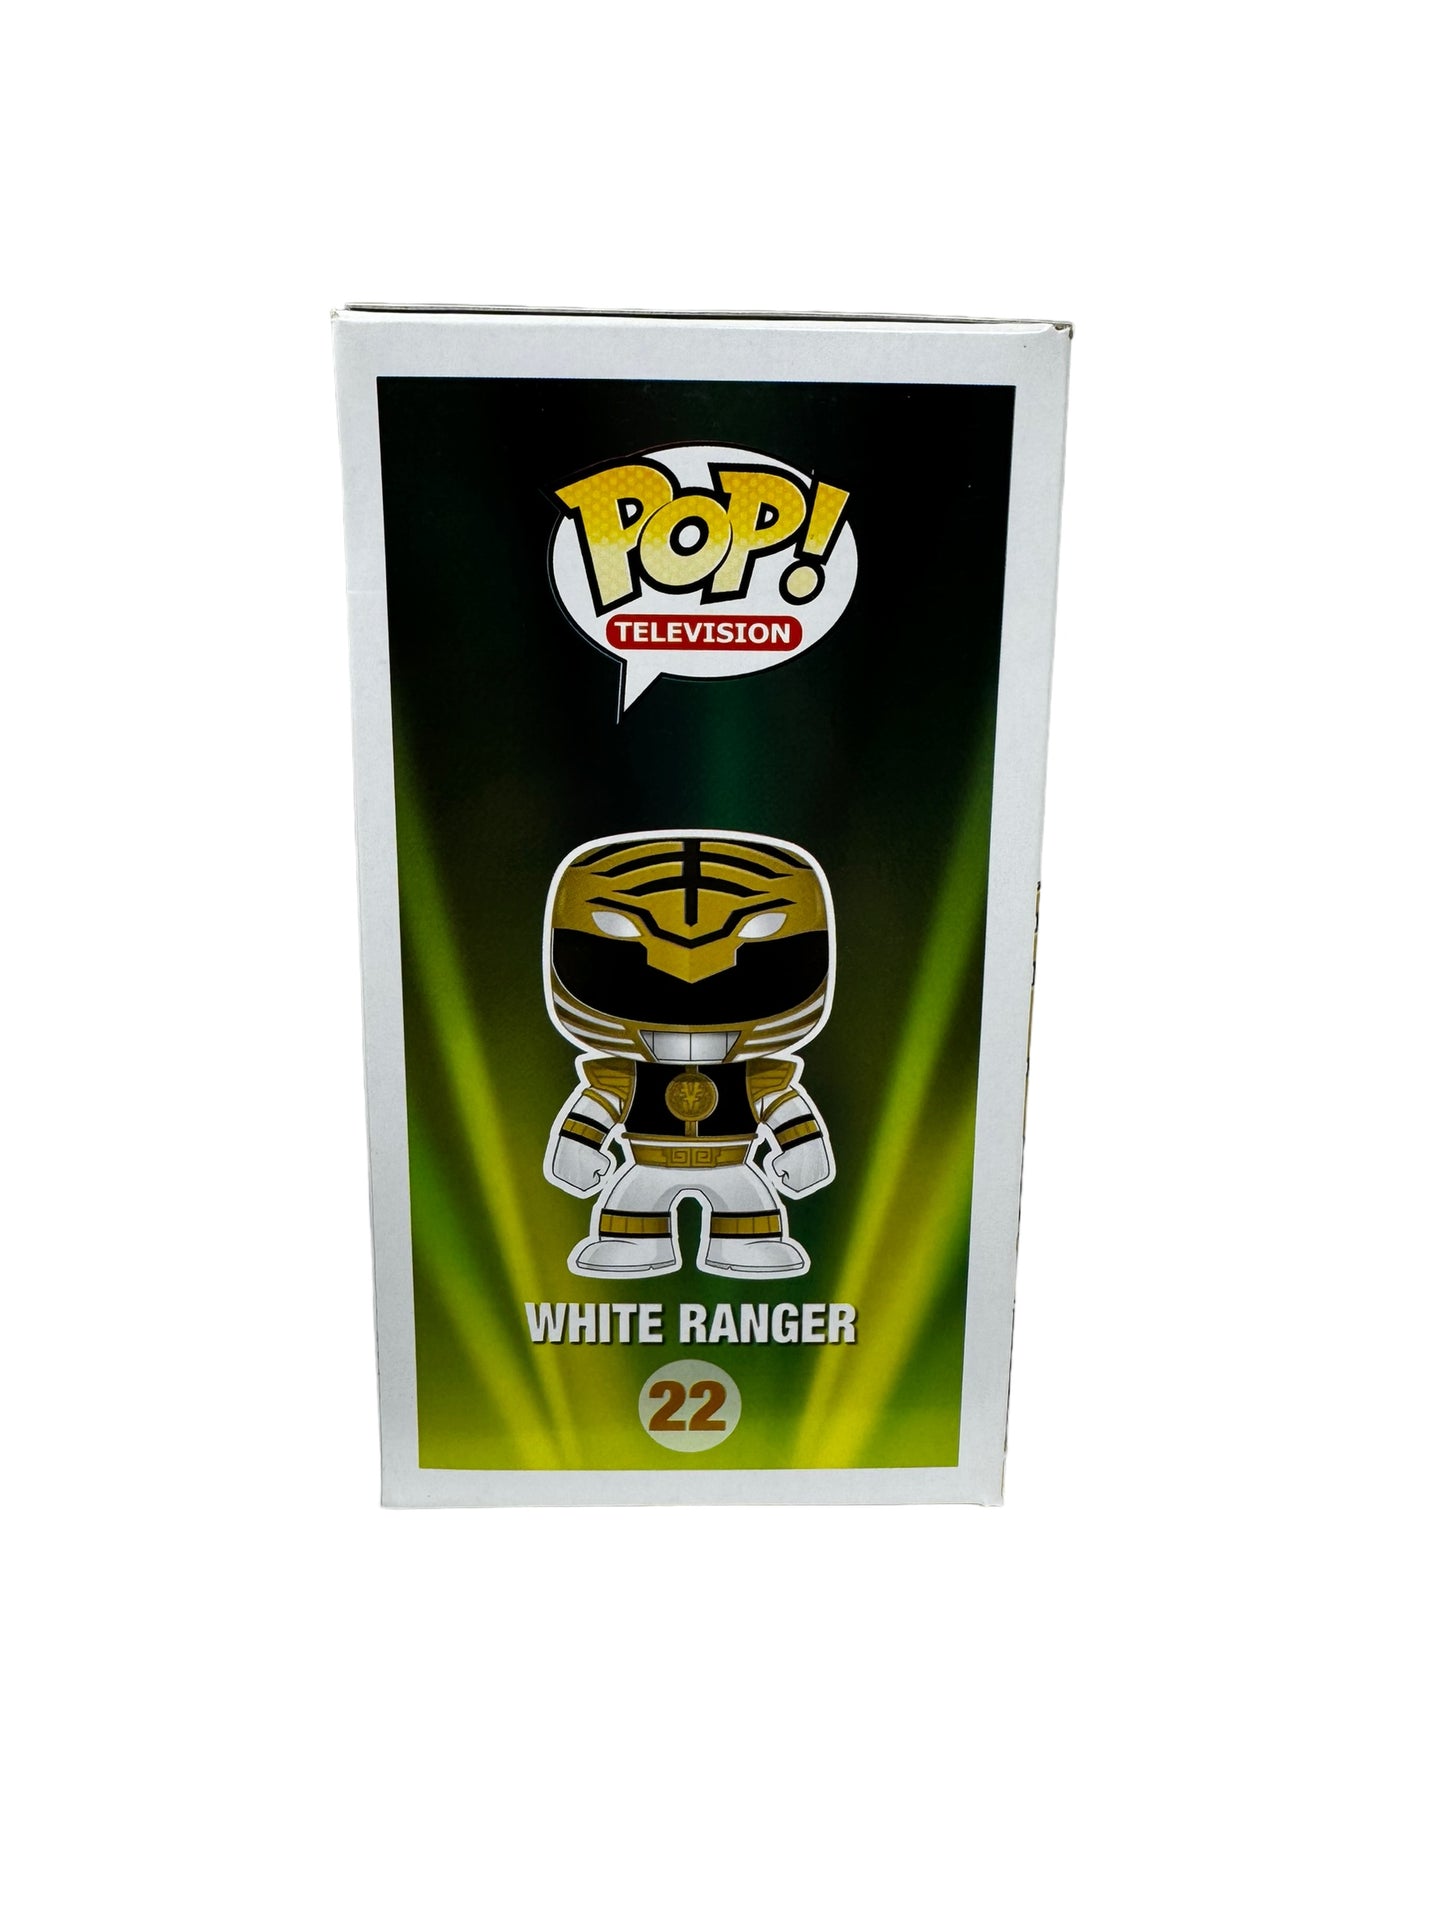 Sold 4/17 - 2013 SDCC LE480 GITD White Ranger 22